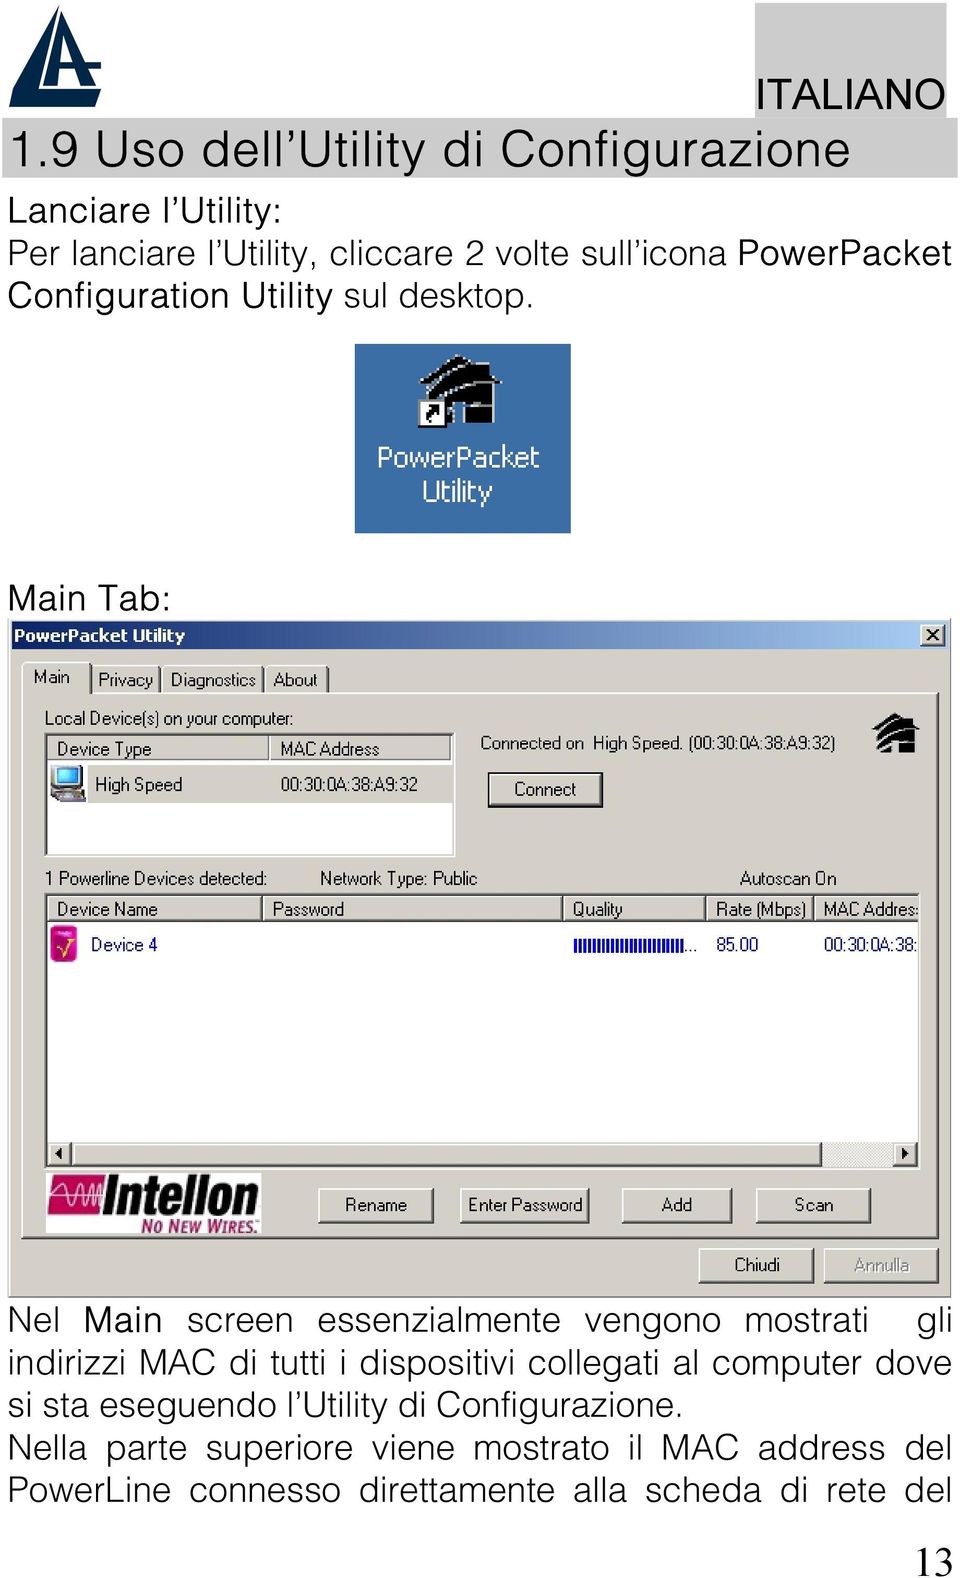 Main Tab: Nel Main screen essenzialmente vengono mostrati gli indirizzi MAC di tutti i dispositivi collegati al